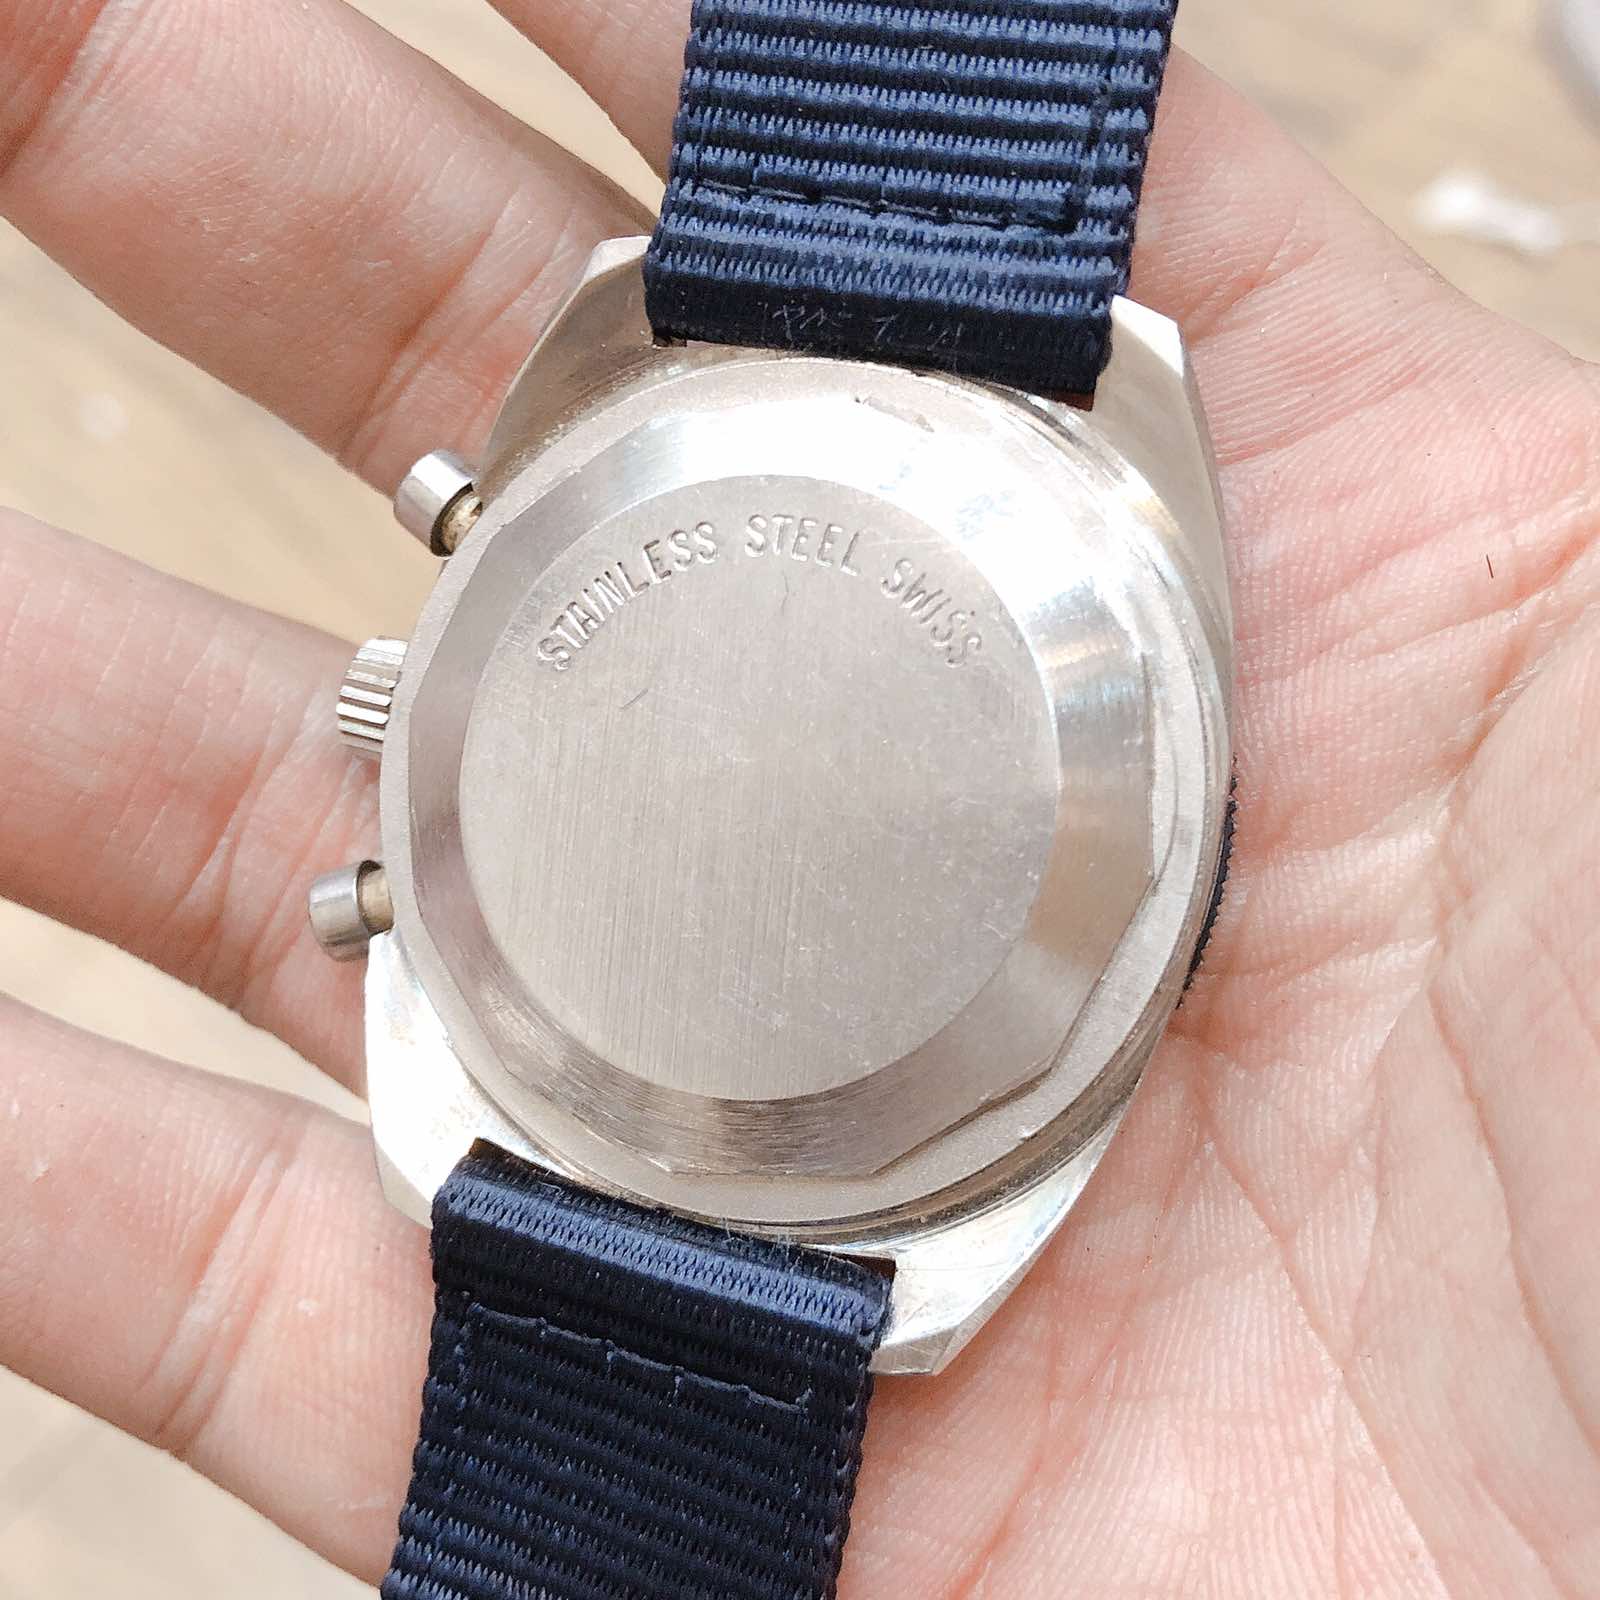 Đồng hồ Hamilton ref. 647 SS Chronograph Valjoux 7733 circa 1970s chính hãng Thụy Sĩ 